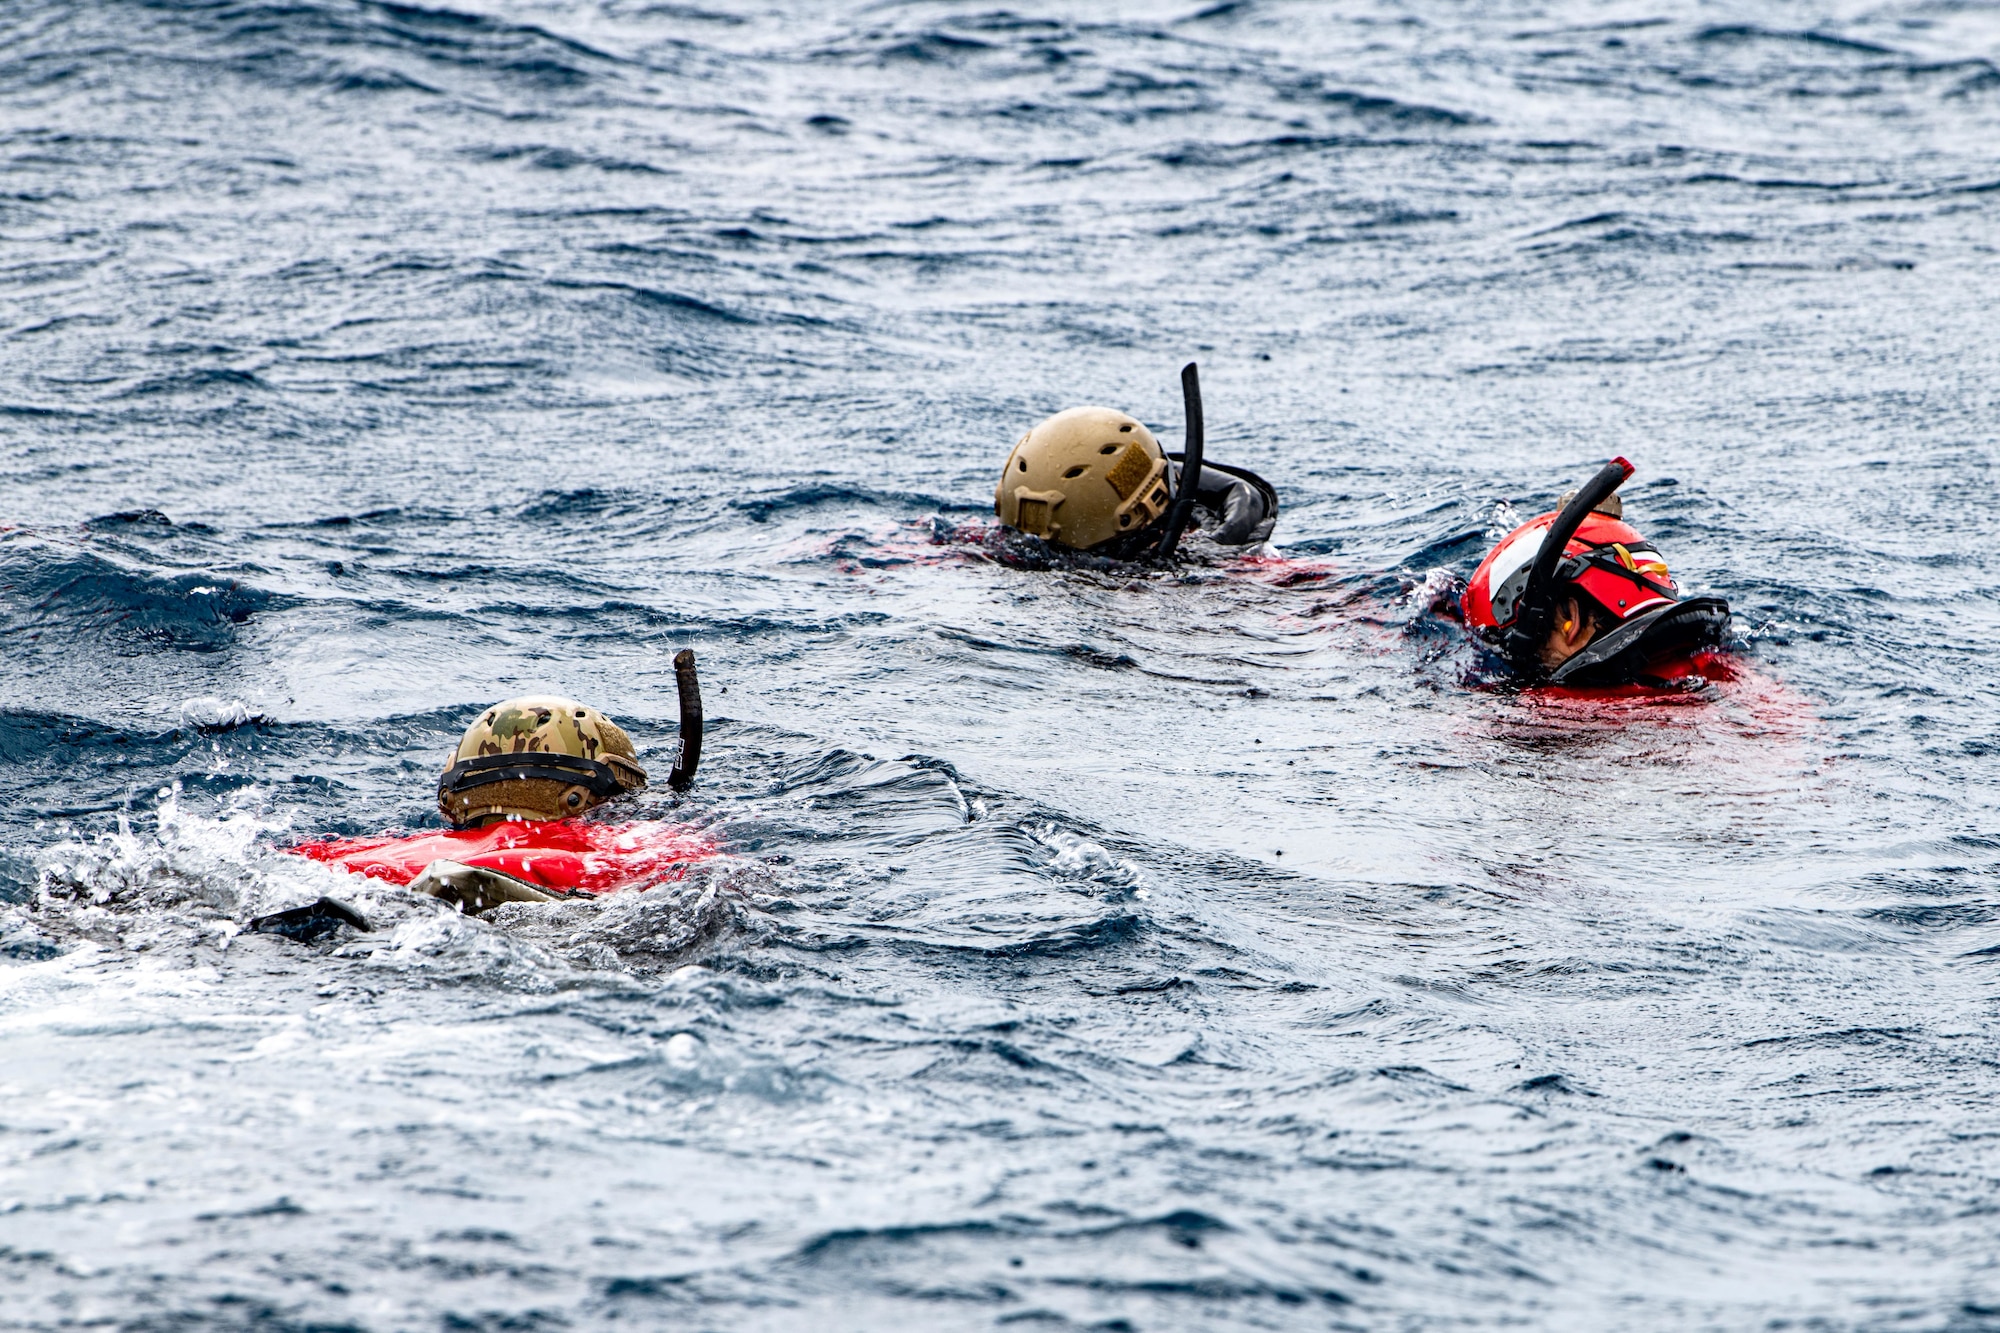 Airmen check gear underwater.